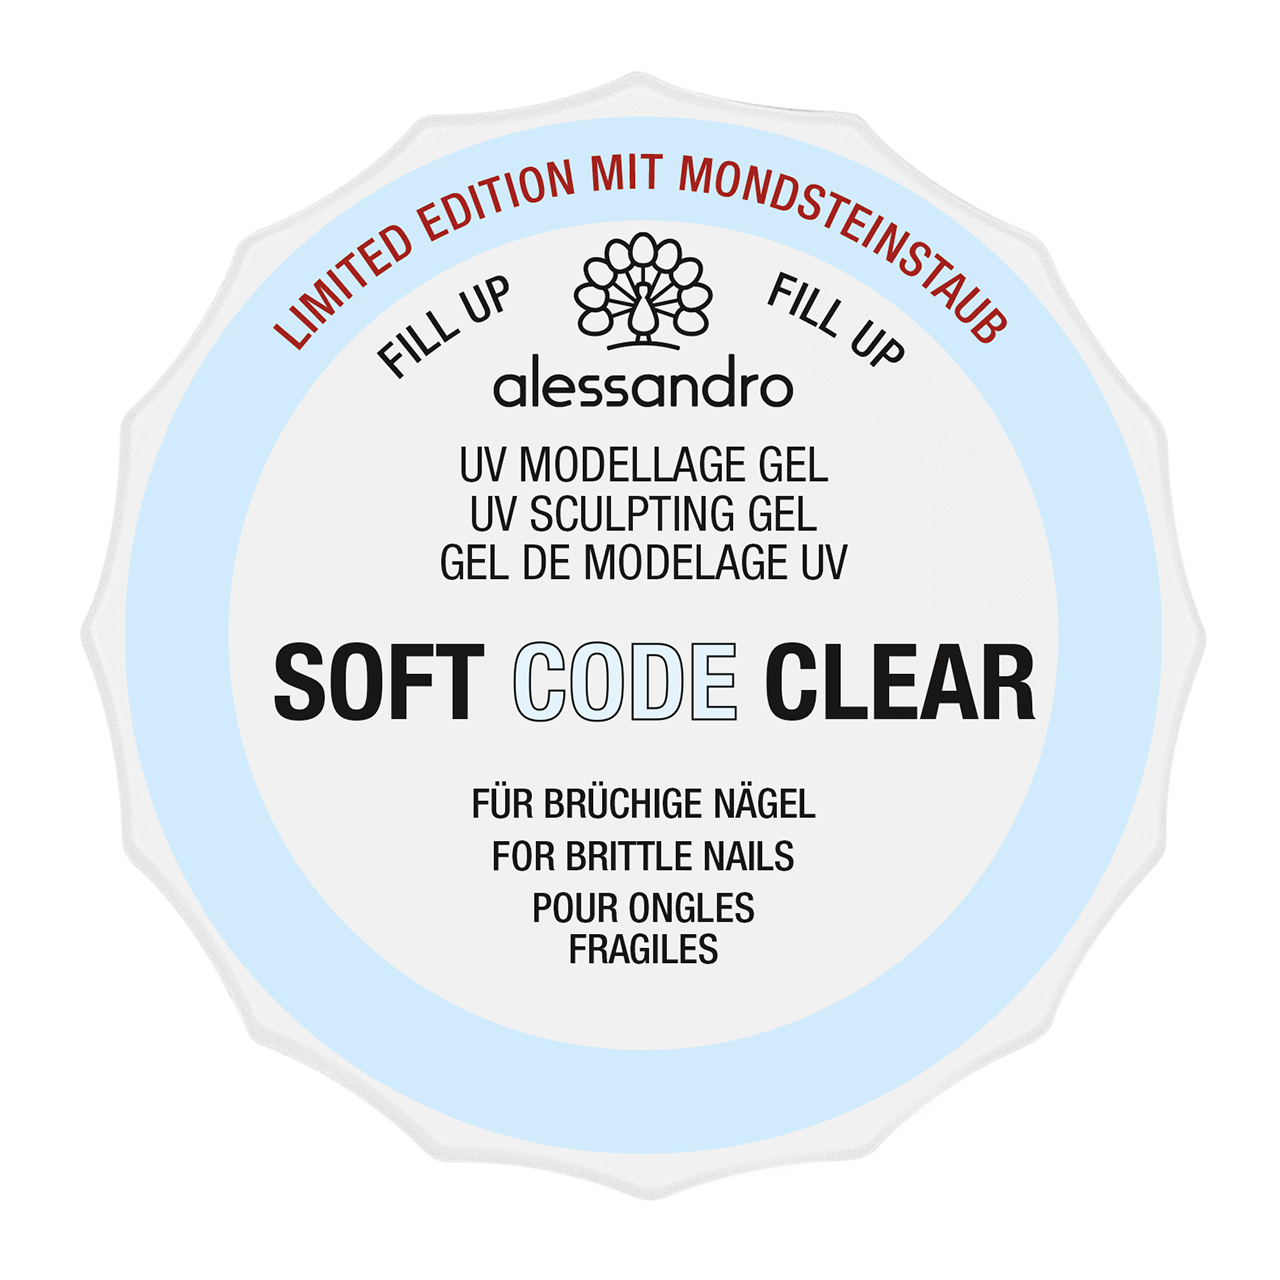 Soft Code Clear mit Mondsteinstaub 15 g